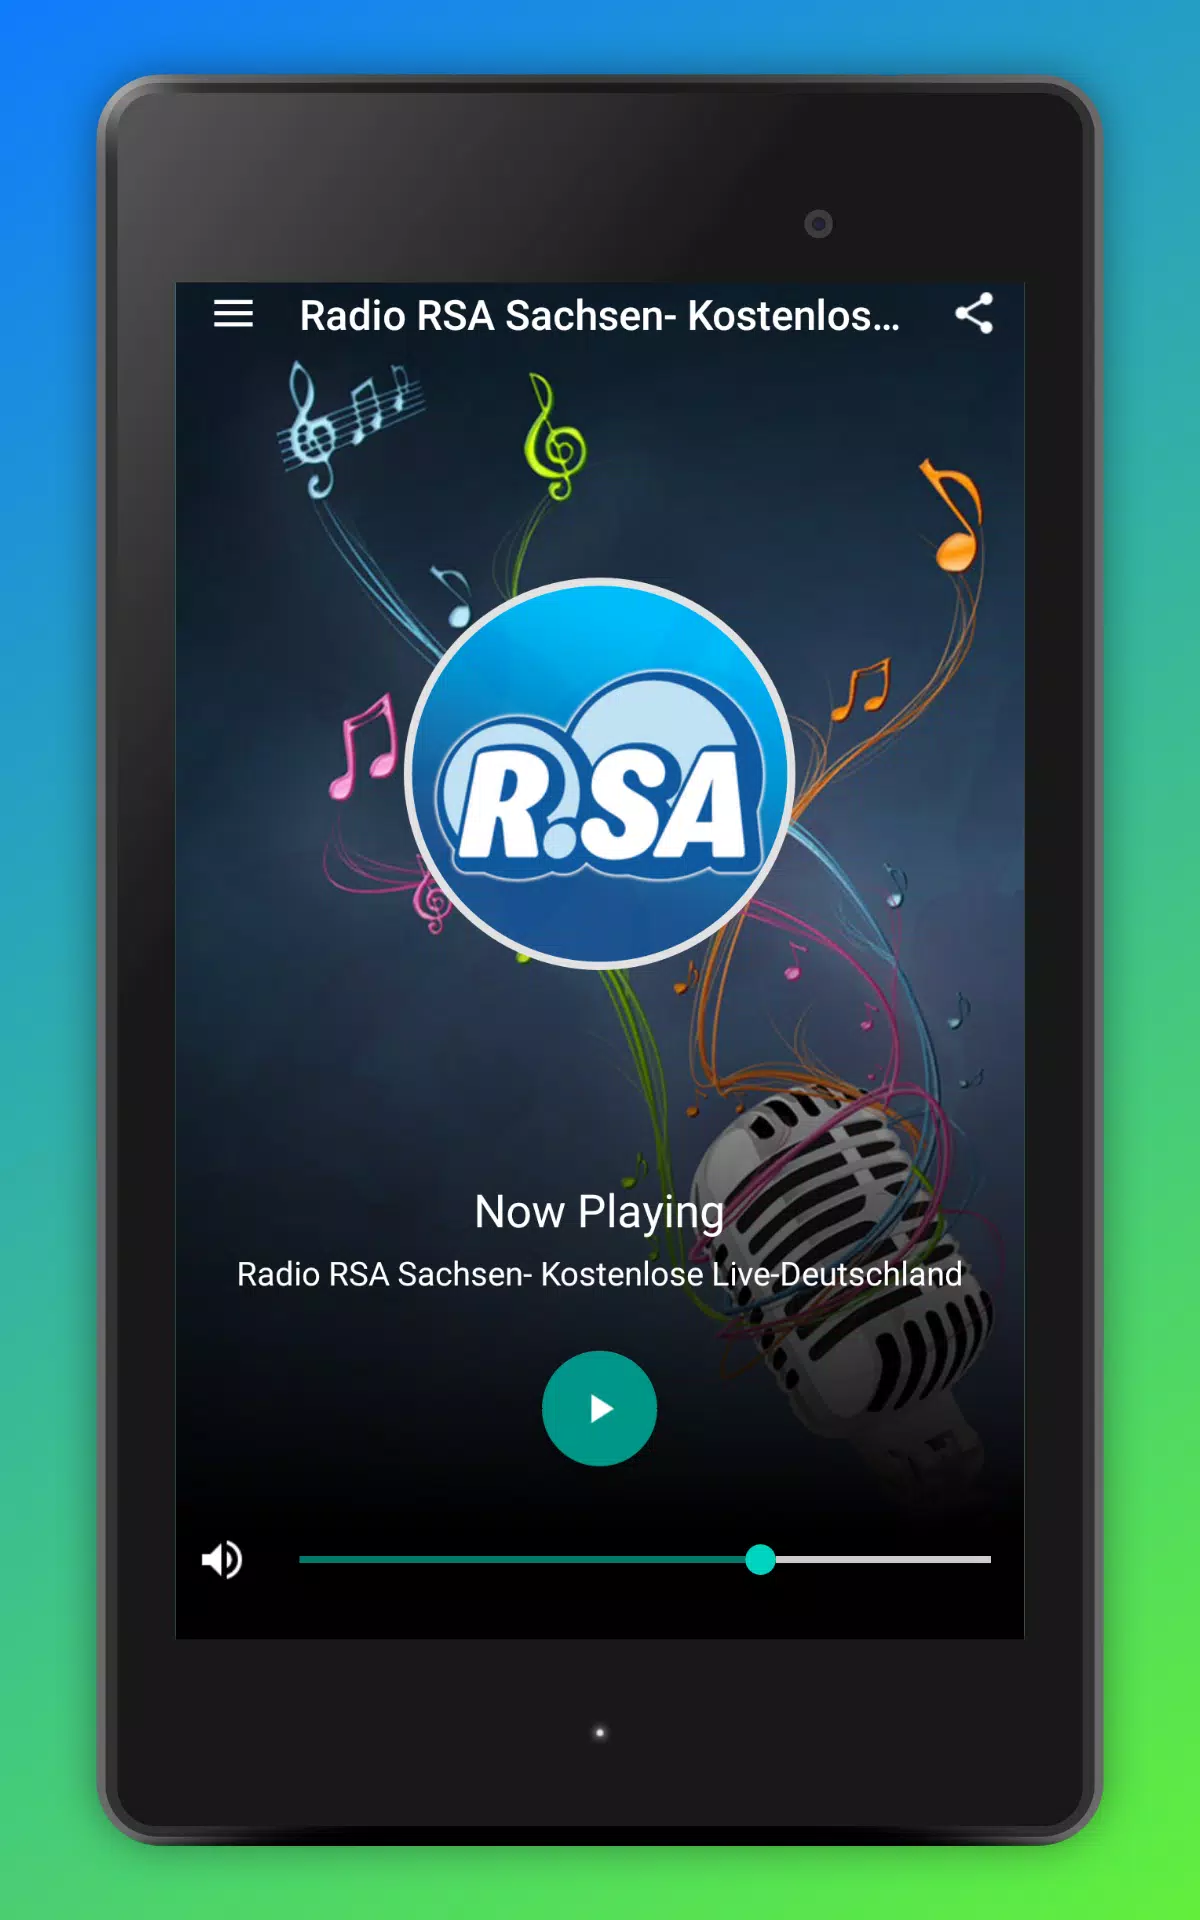 Radio RSA Sachsen- Kostenlose Live-Deutschland for Android - APK Download